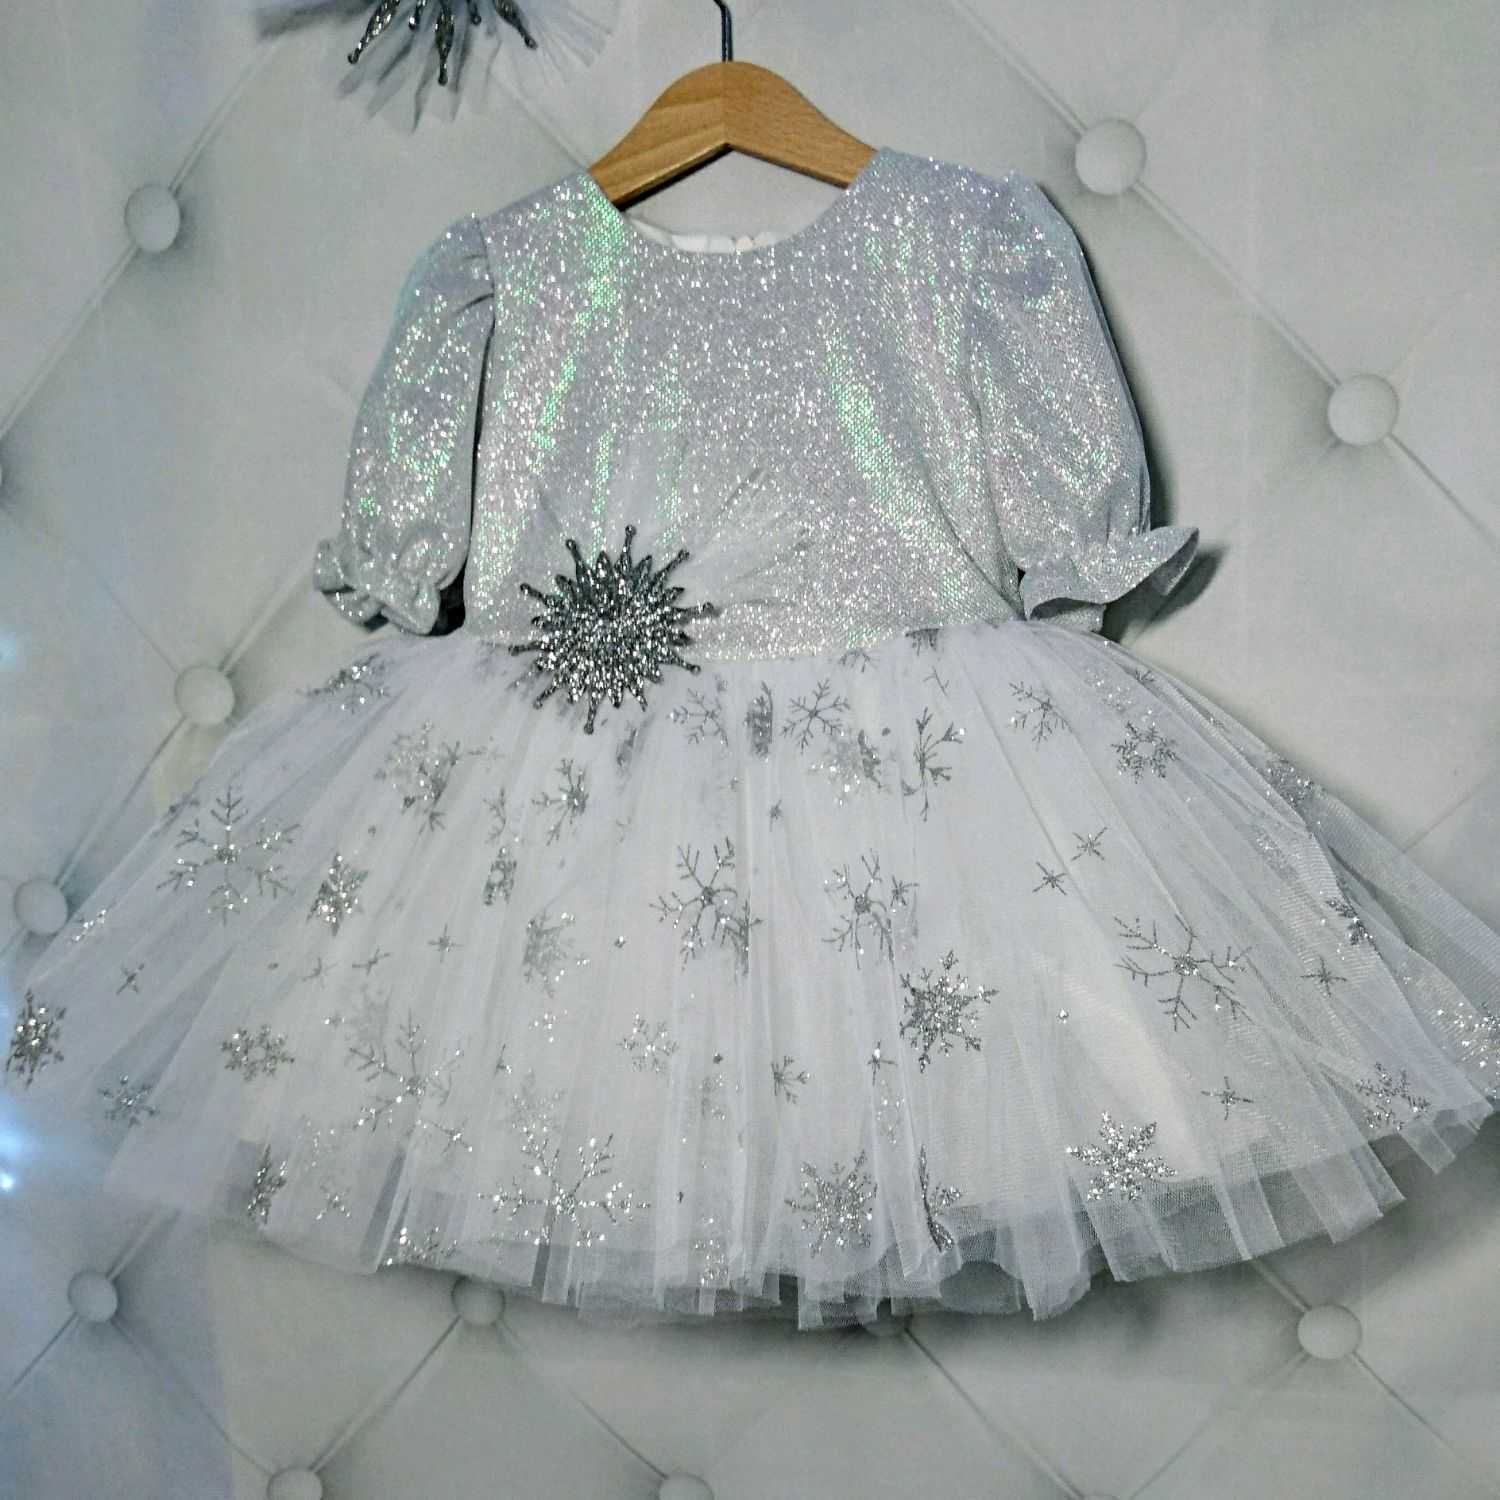 Как связать платье снежинка для девочки крючком: схема и описание. как вязать узор снежинка на детское платье крючком для новогоднего утренника?